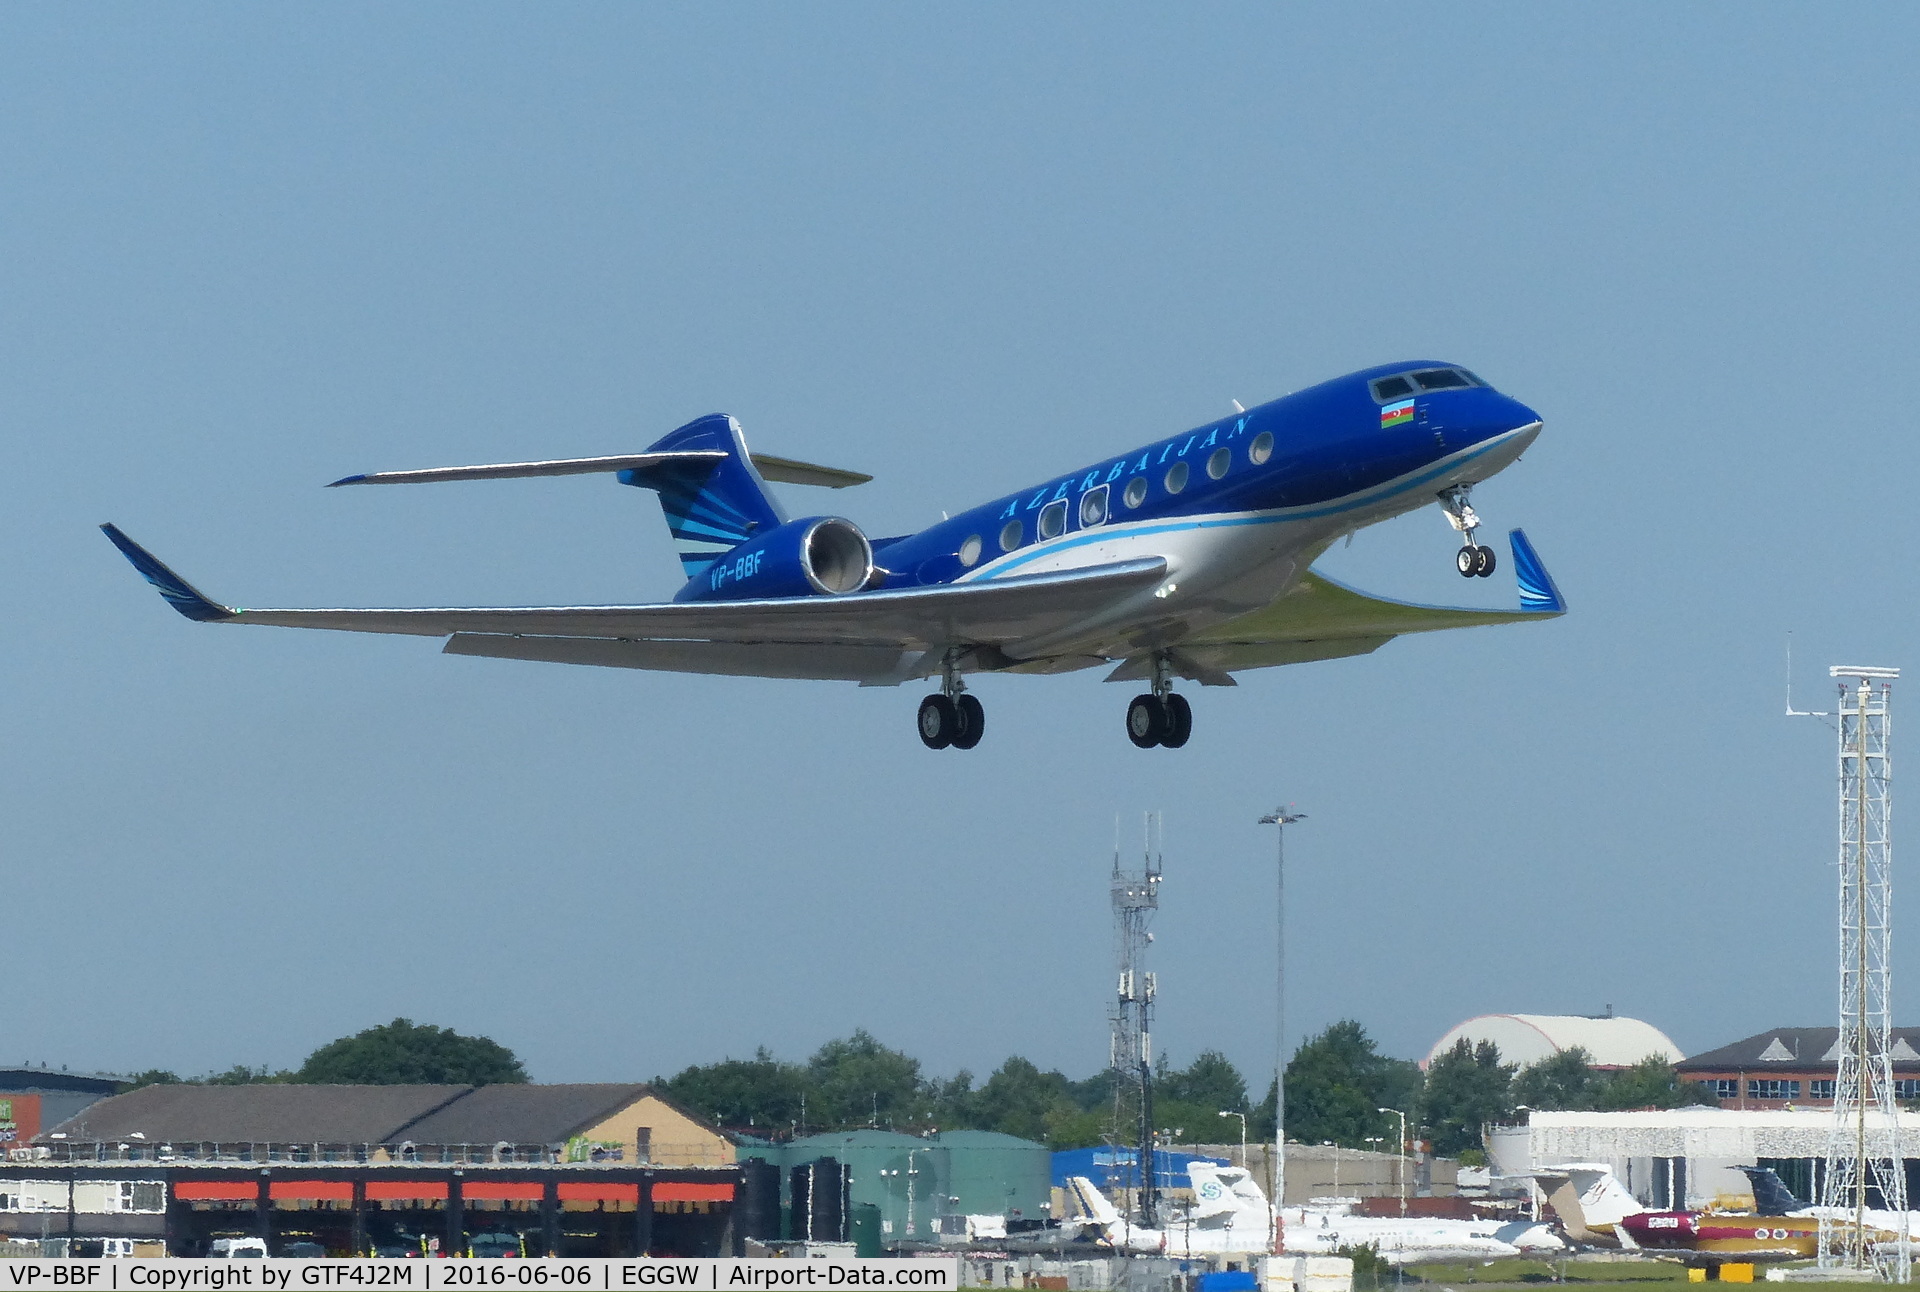 VP-BBF, 2014 Gulfstream Aerospace G650 (G-VI) C/N 6110, VP-BBF at Luton 6.6.16